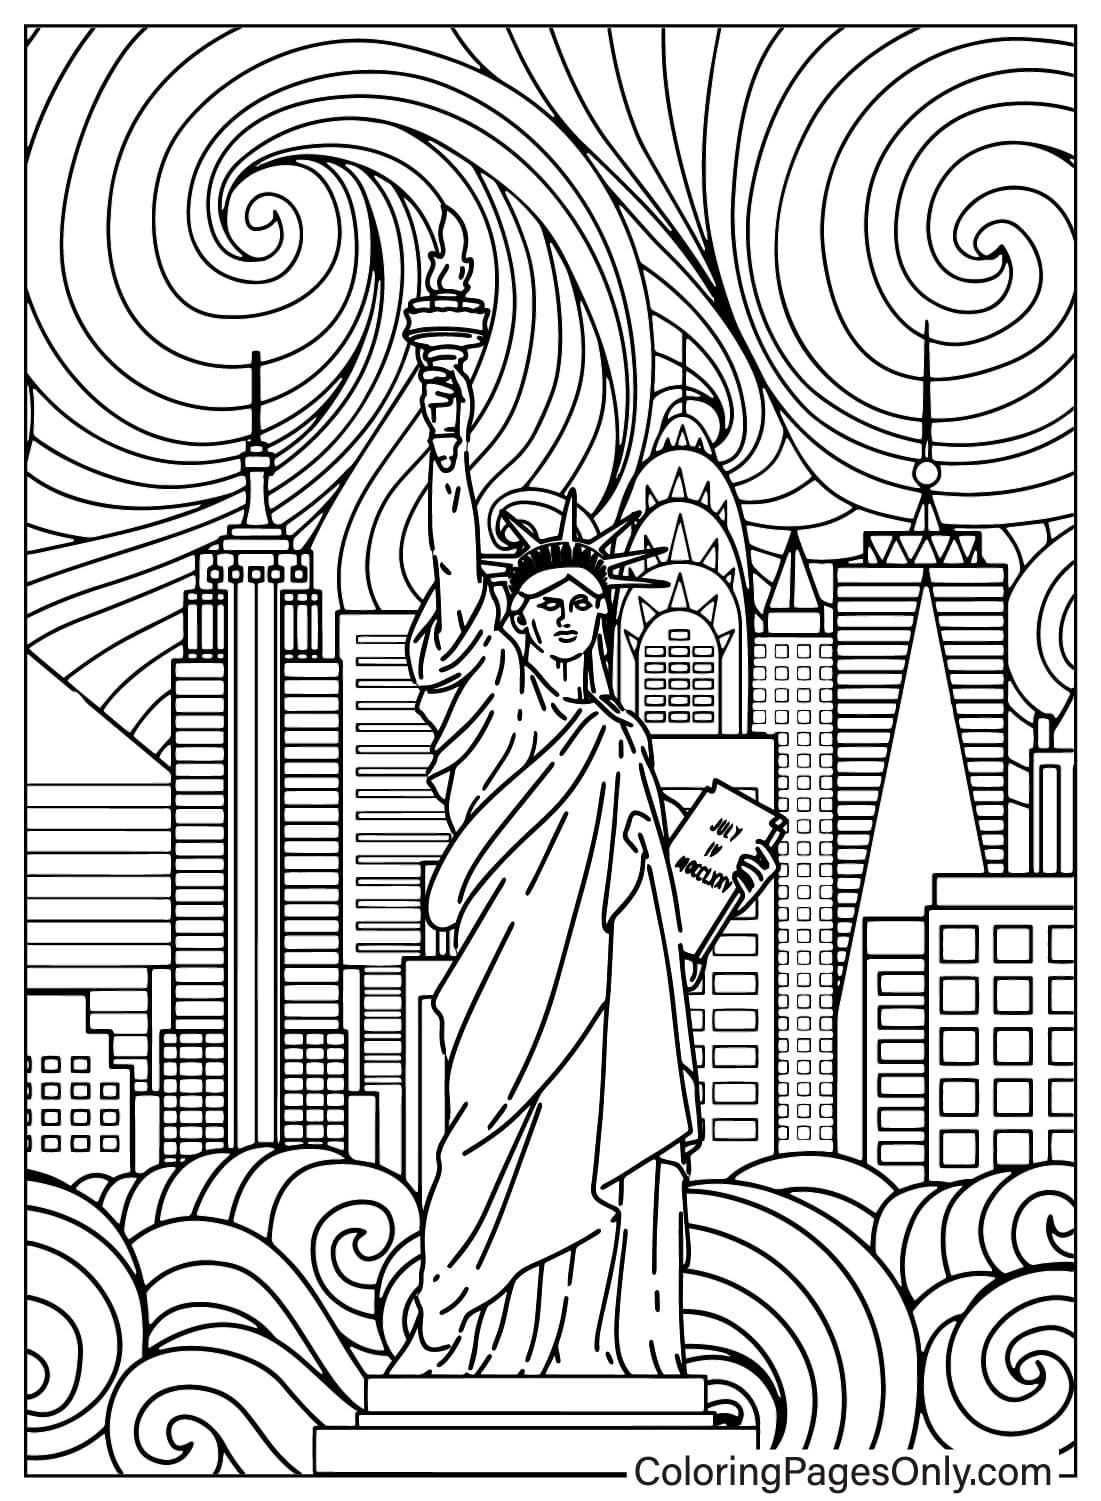 Página para colorear de la Estatua de la Libertad para adultos